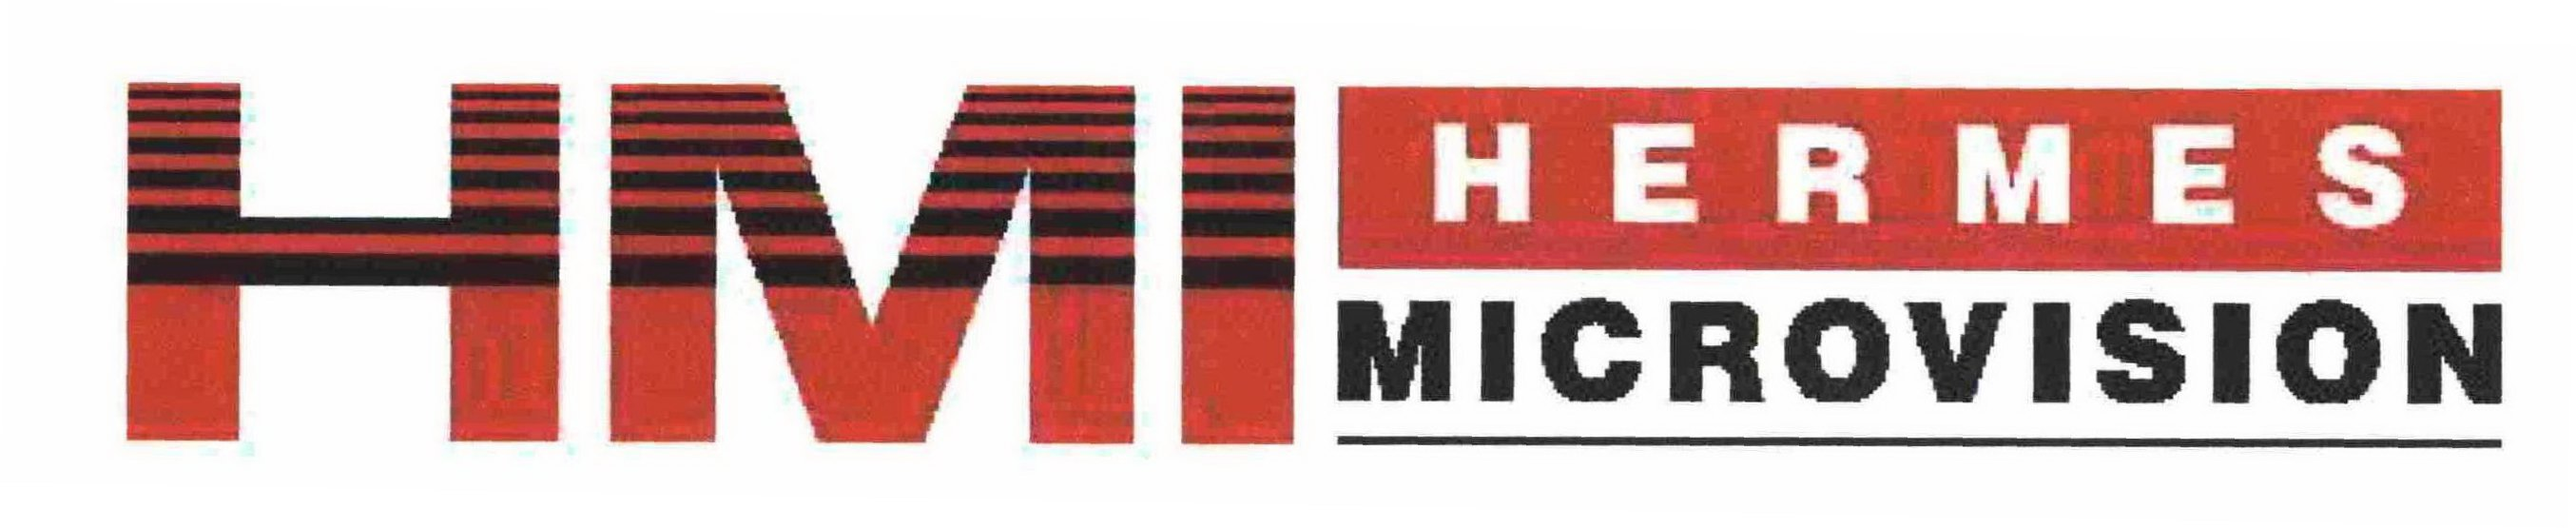  HMI HERMES MICROVISION